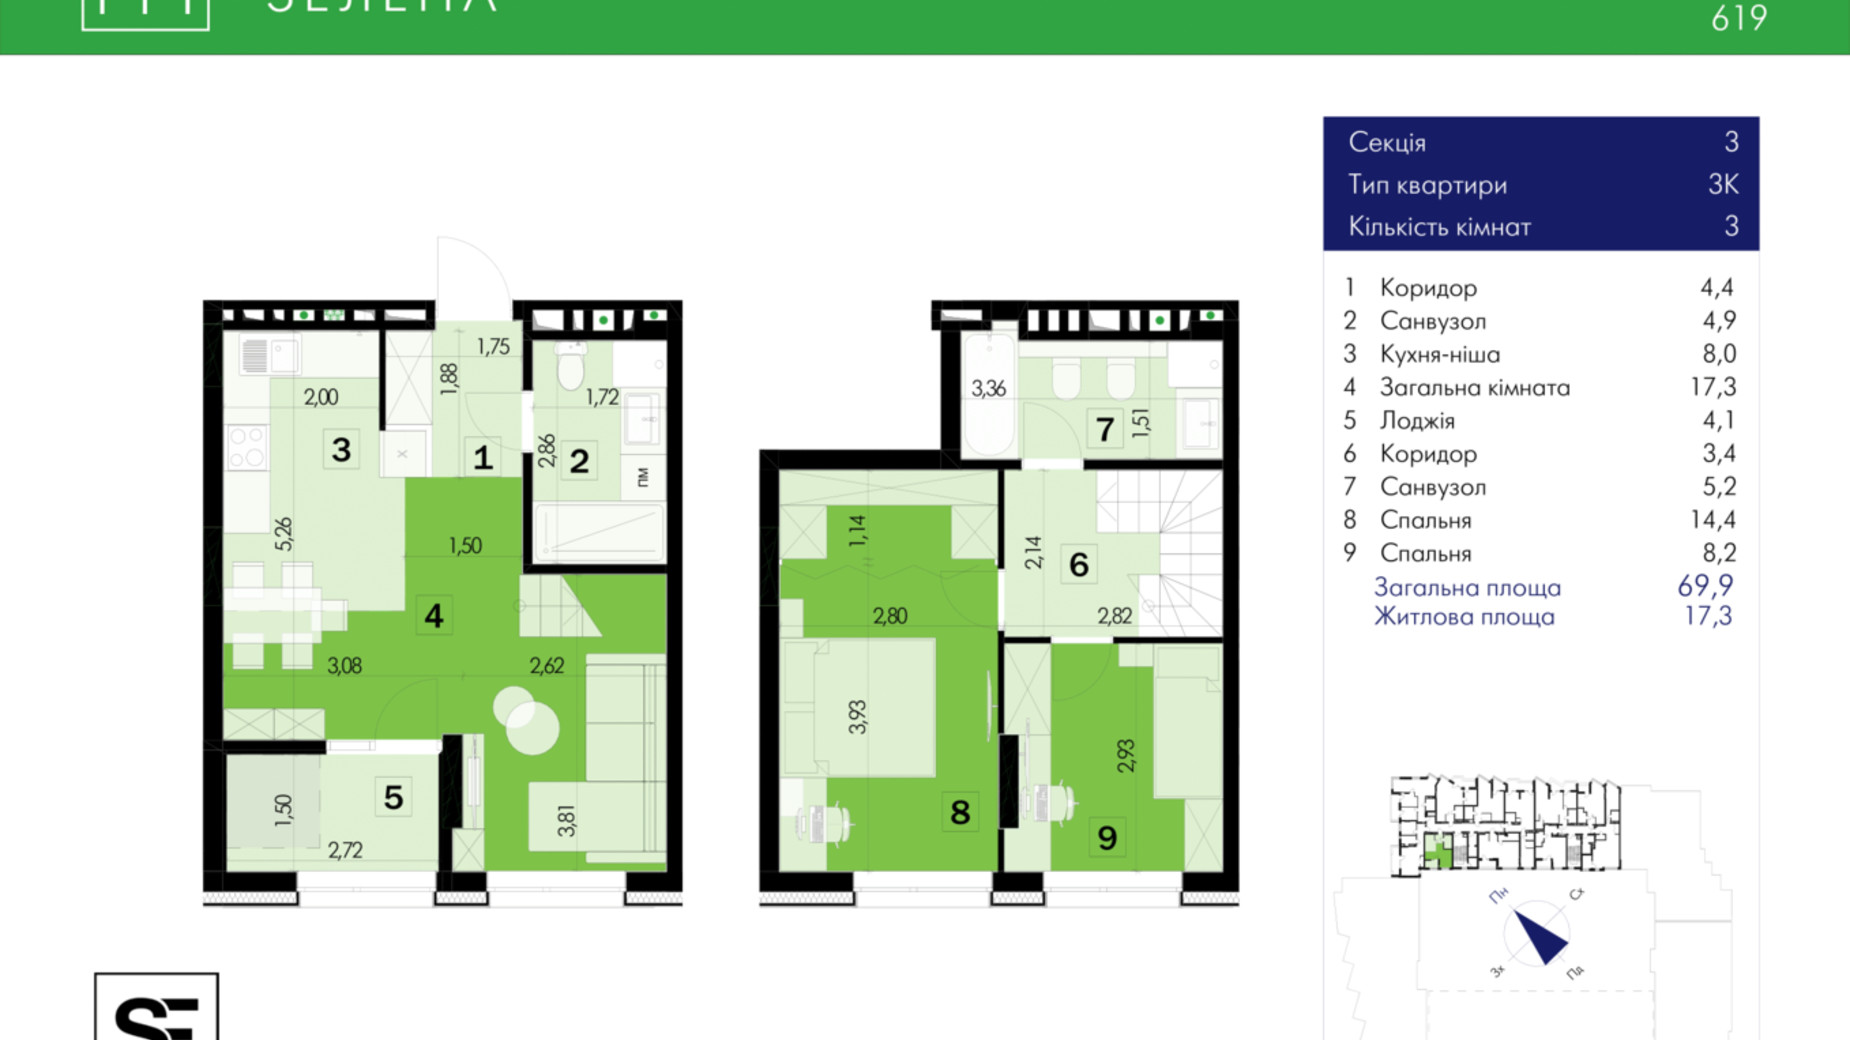 Планировка много­уровневой квартиры в ЖК 111 Зеленая 69.9 м², фото 634041